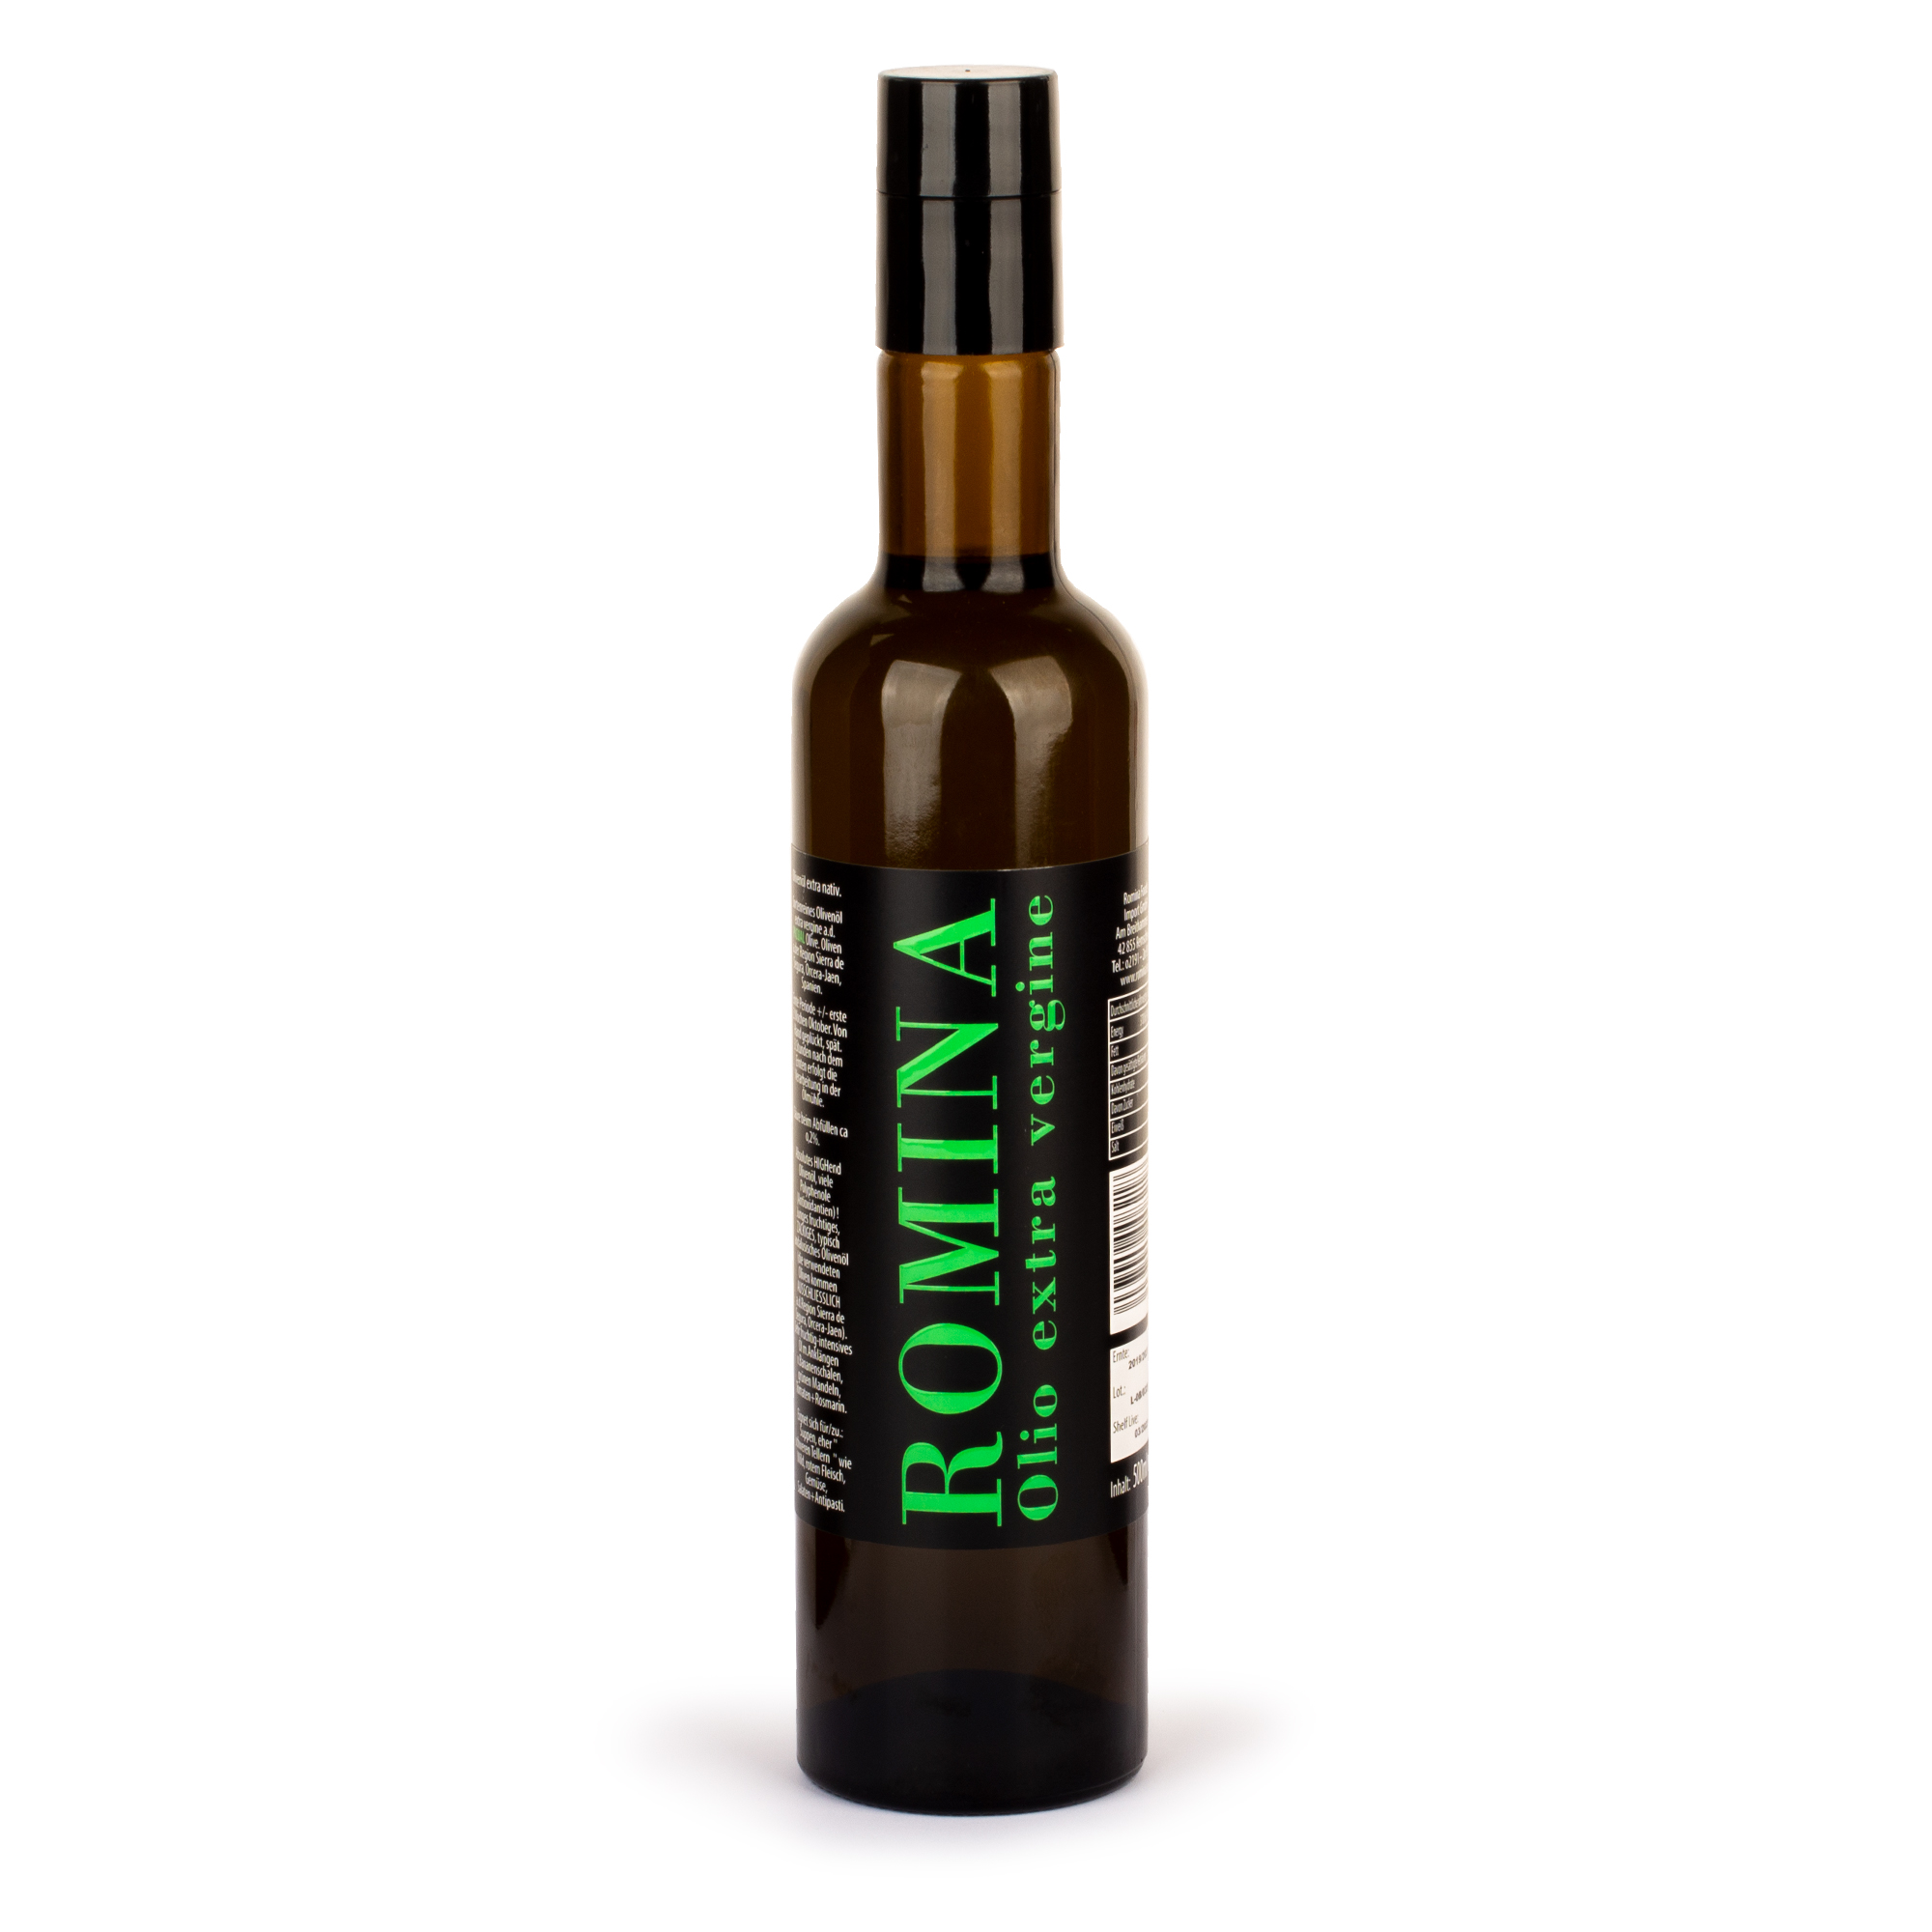 Romina Olio extra vergine - Olivenöl extra nativ PICUAL